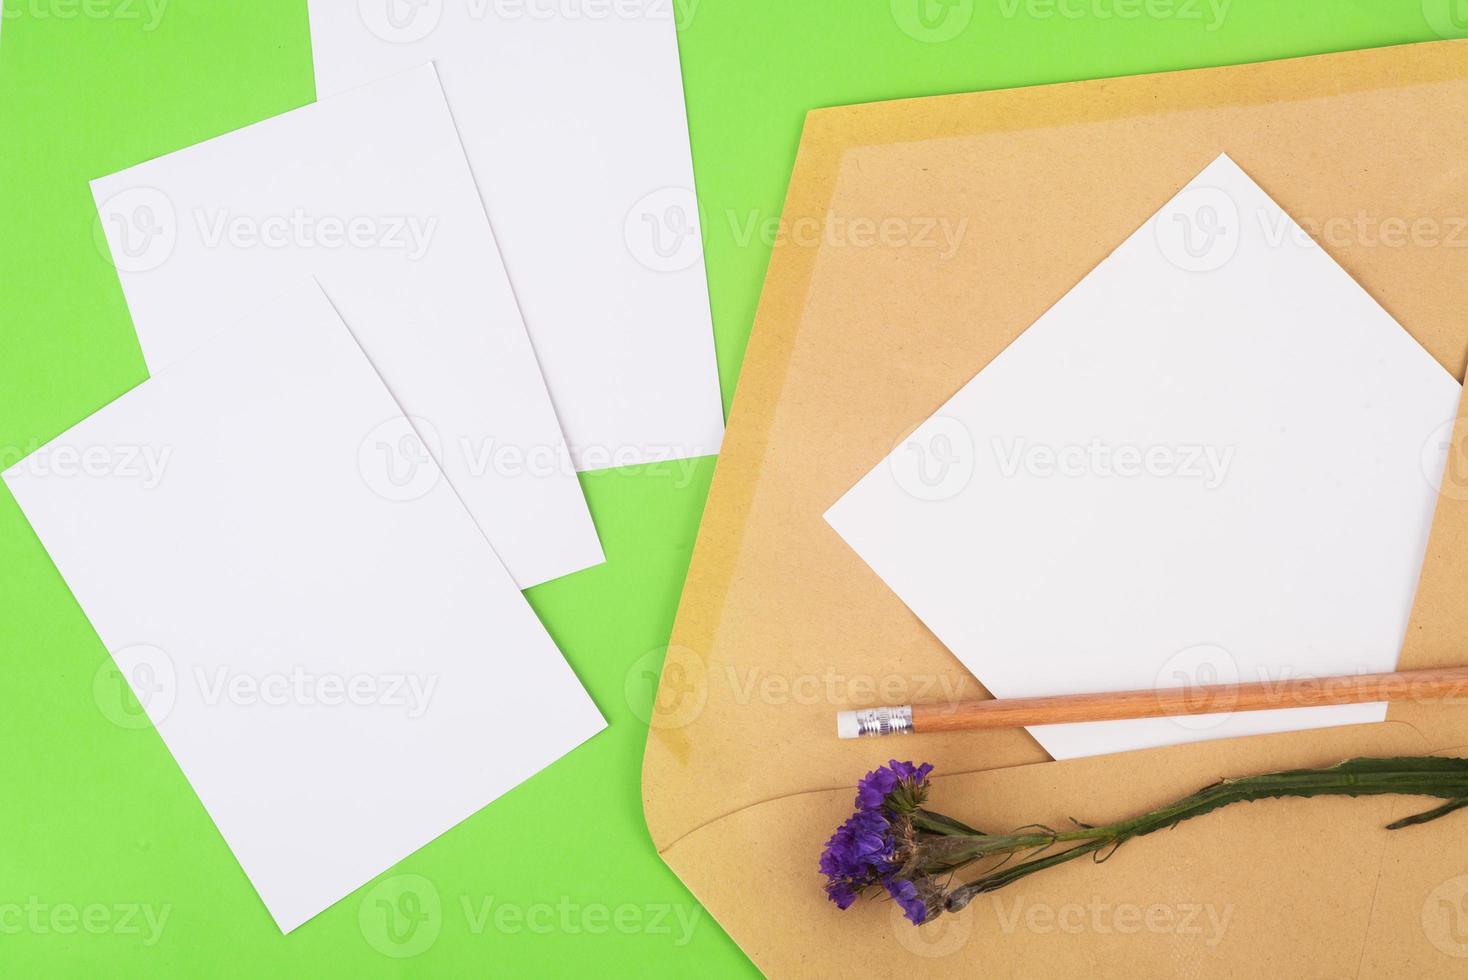 em branco de fotos e o branco em branco de foto em um envelope postal em um fundo verde